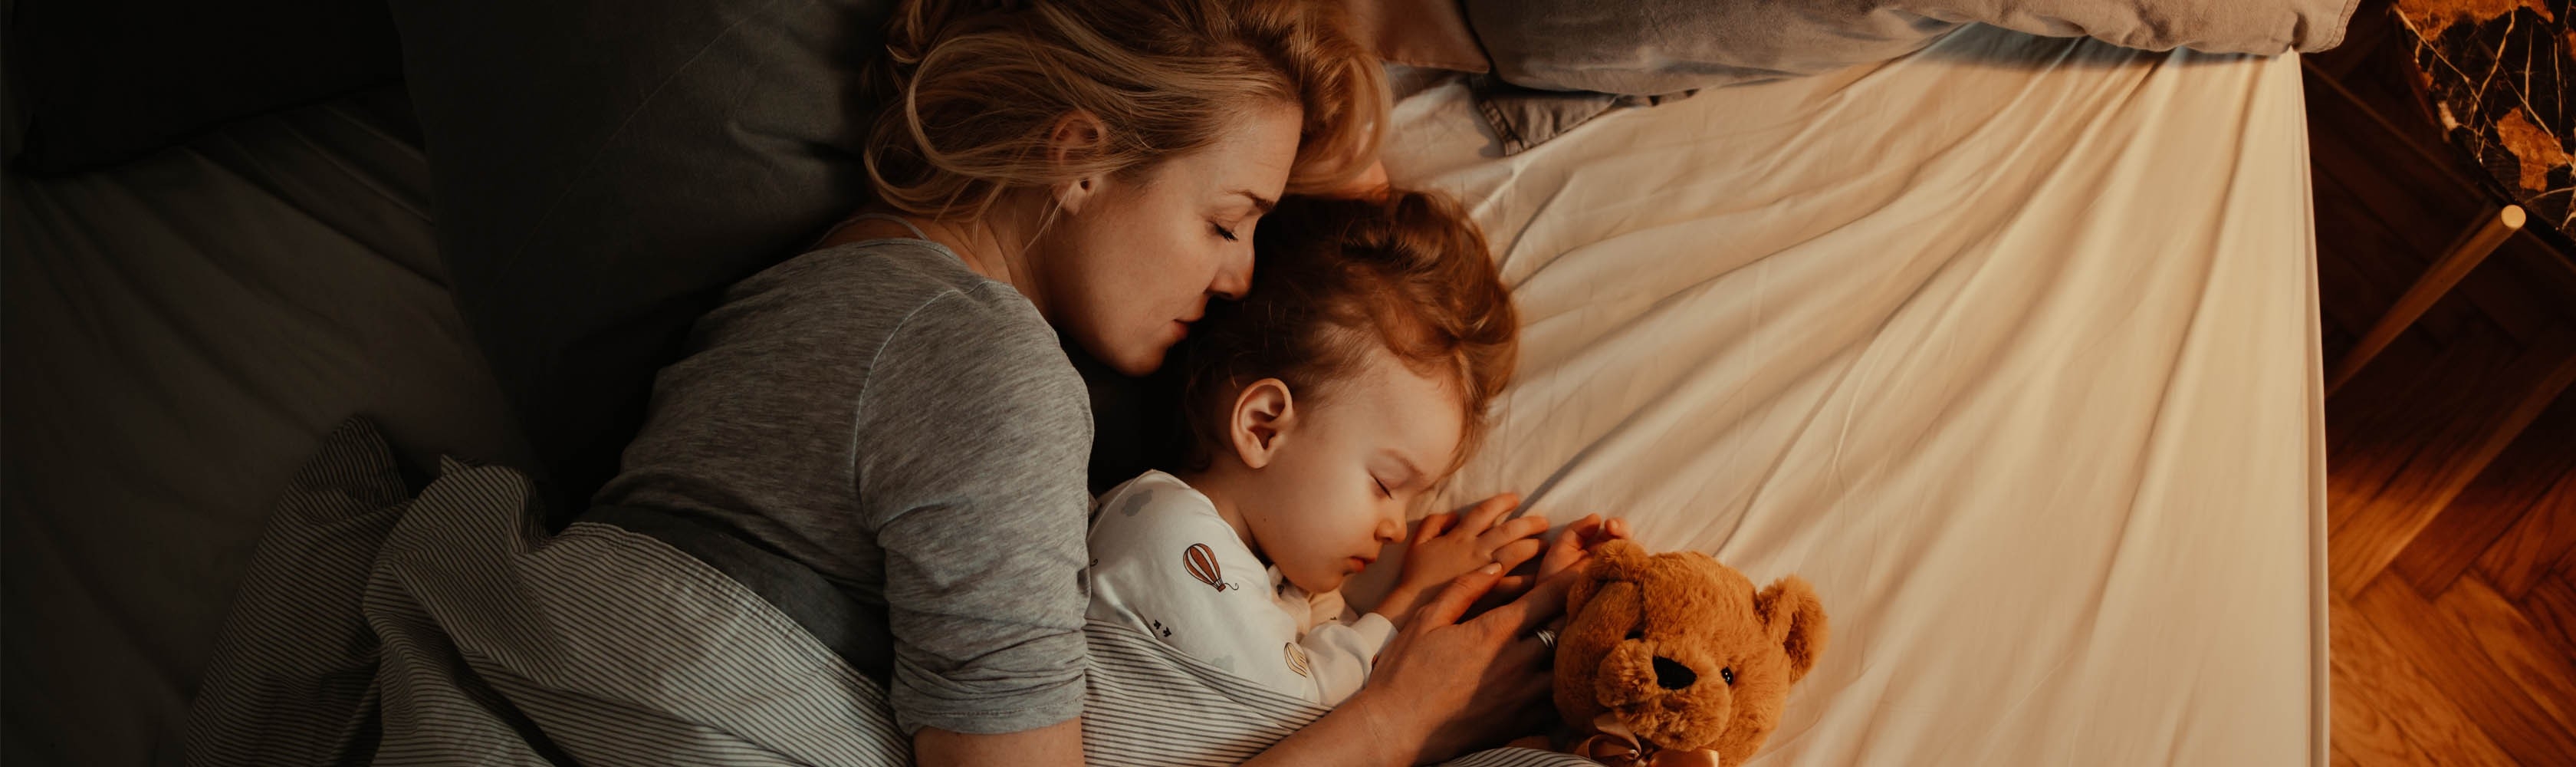 Eine Mutter, ein Kind und ein Teddy liegen zusammen im Bett.